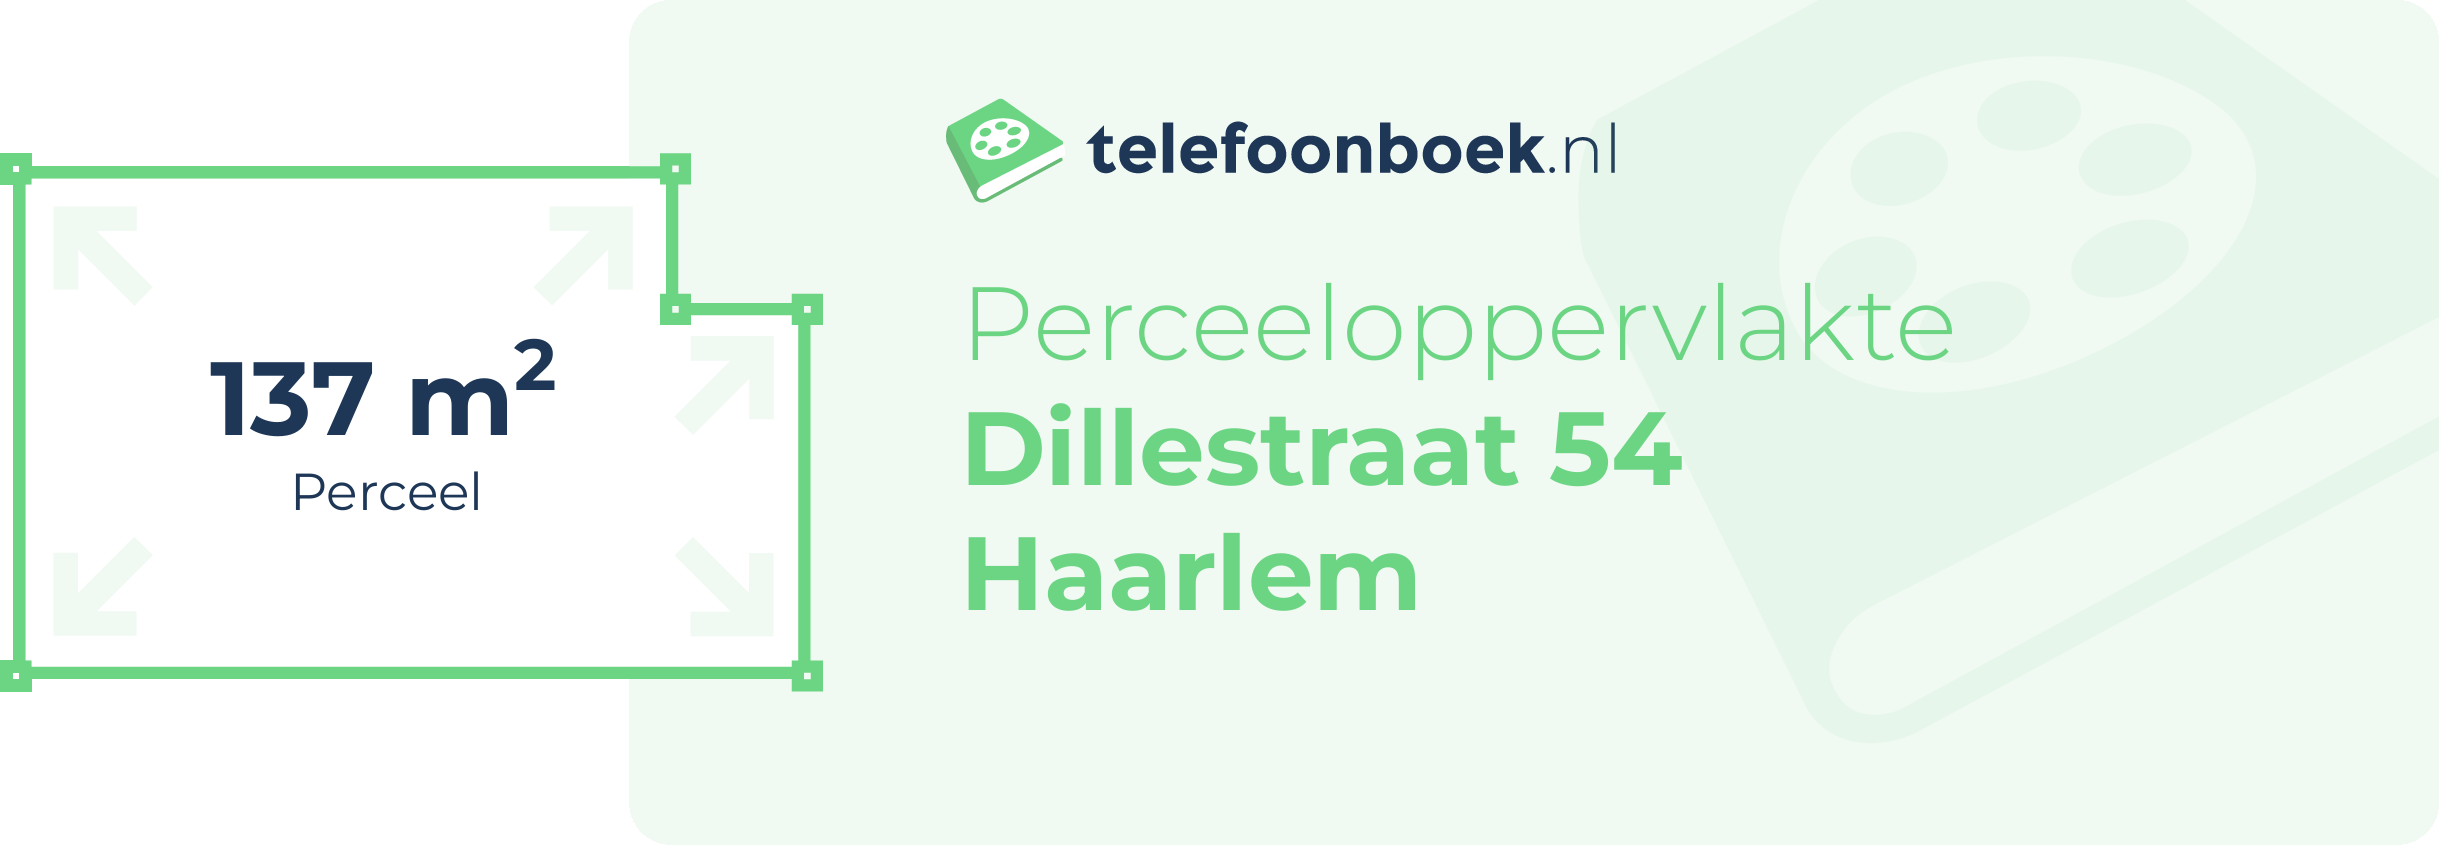 Perceeloppervlakte Dillestraat 54 Haarlem